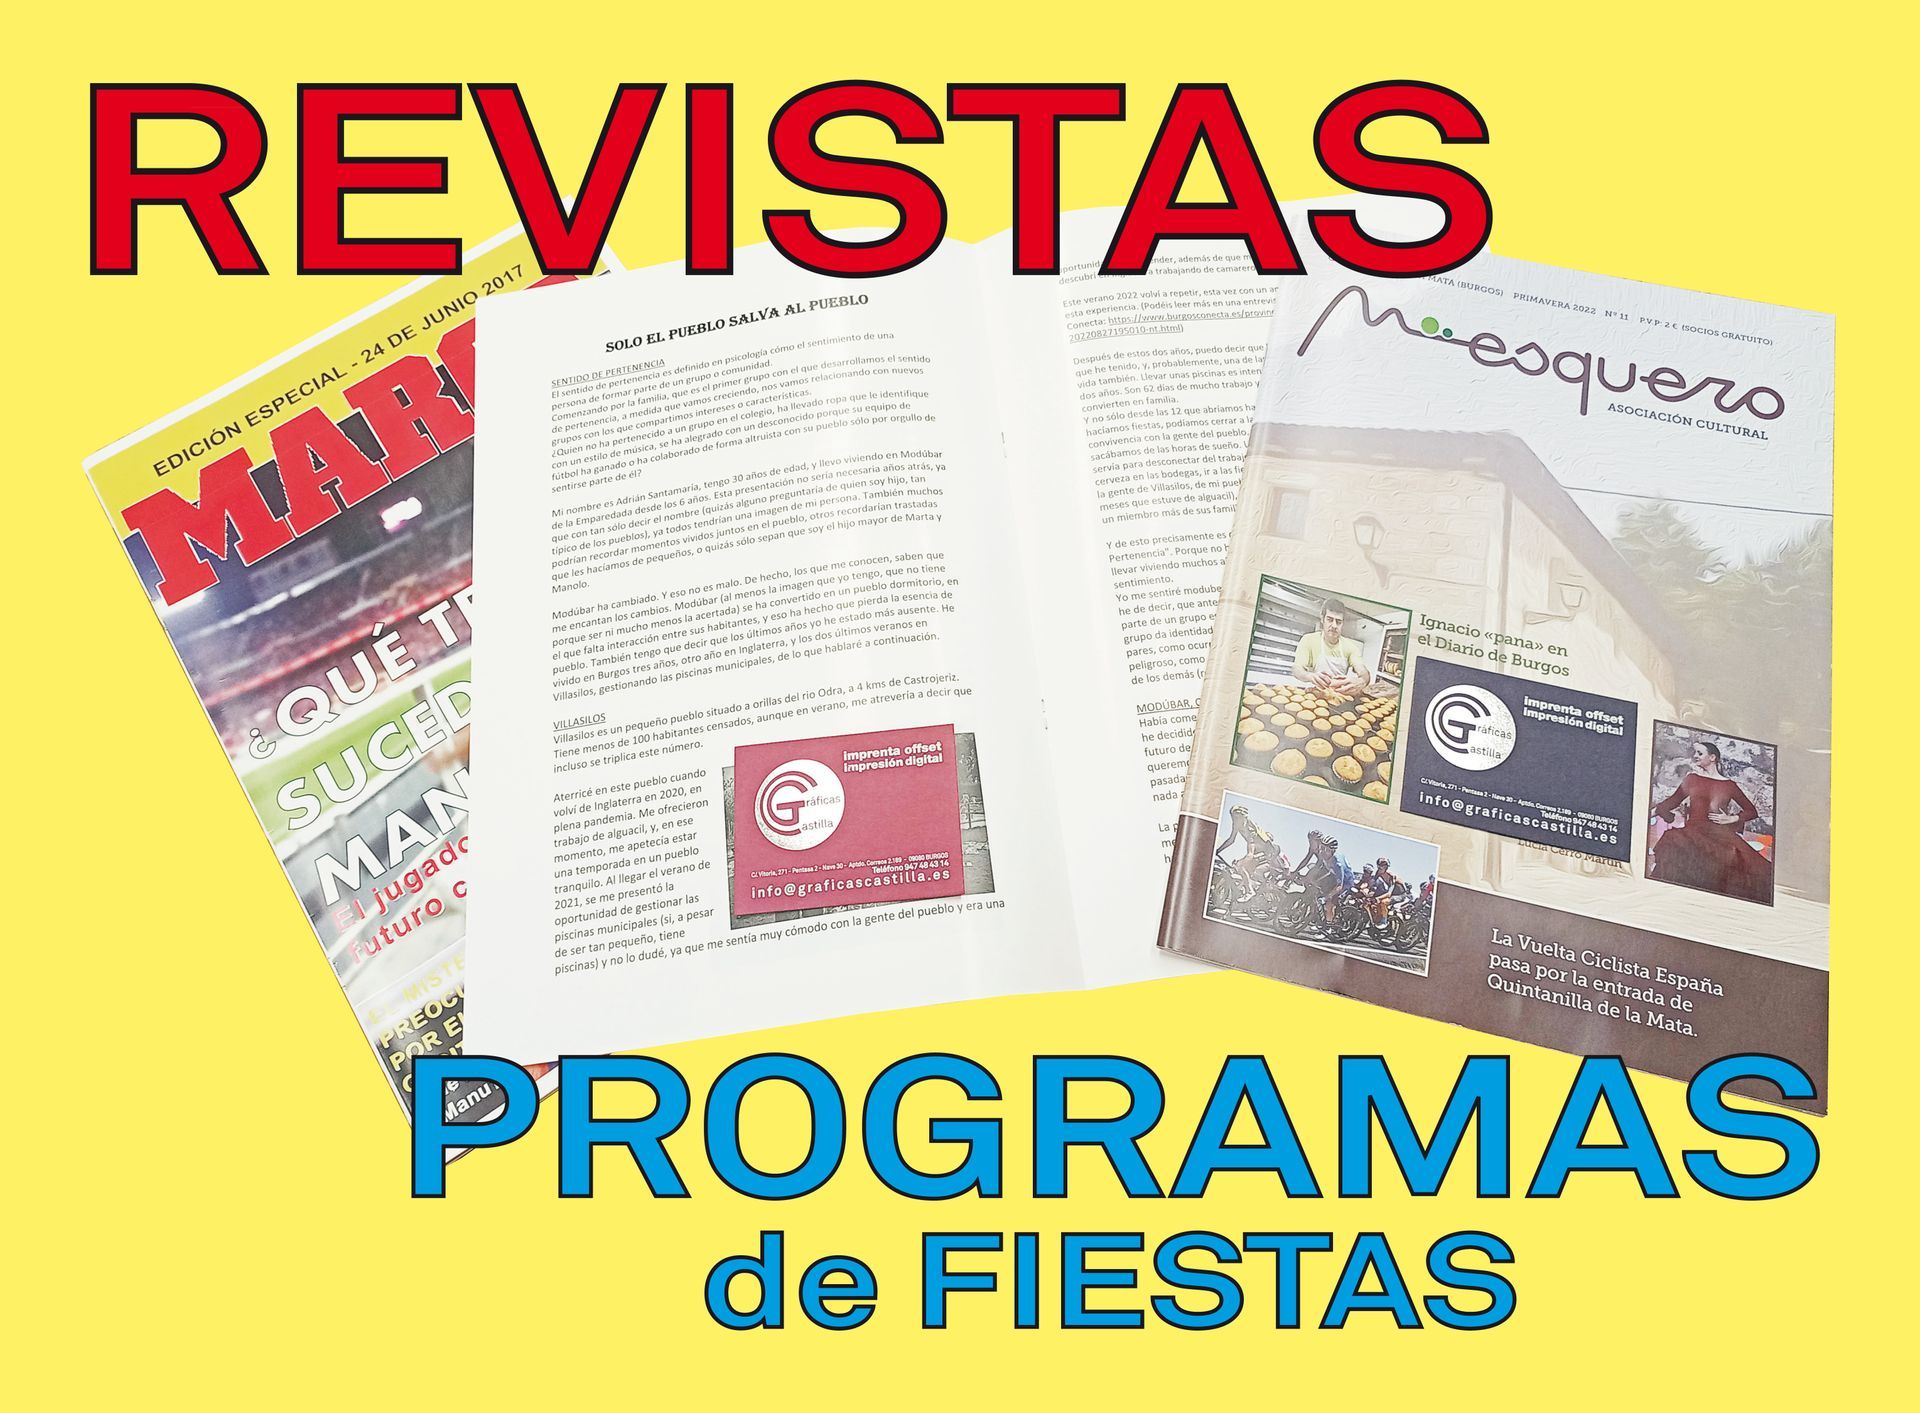 Revistas y Programas de Fiestas